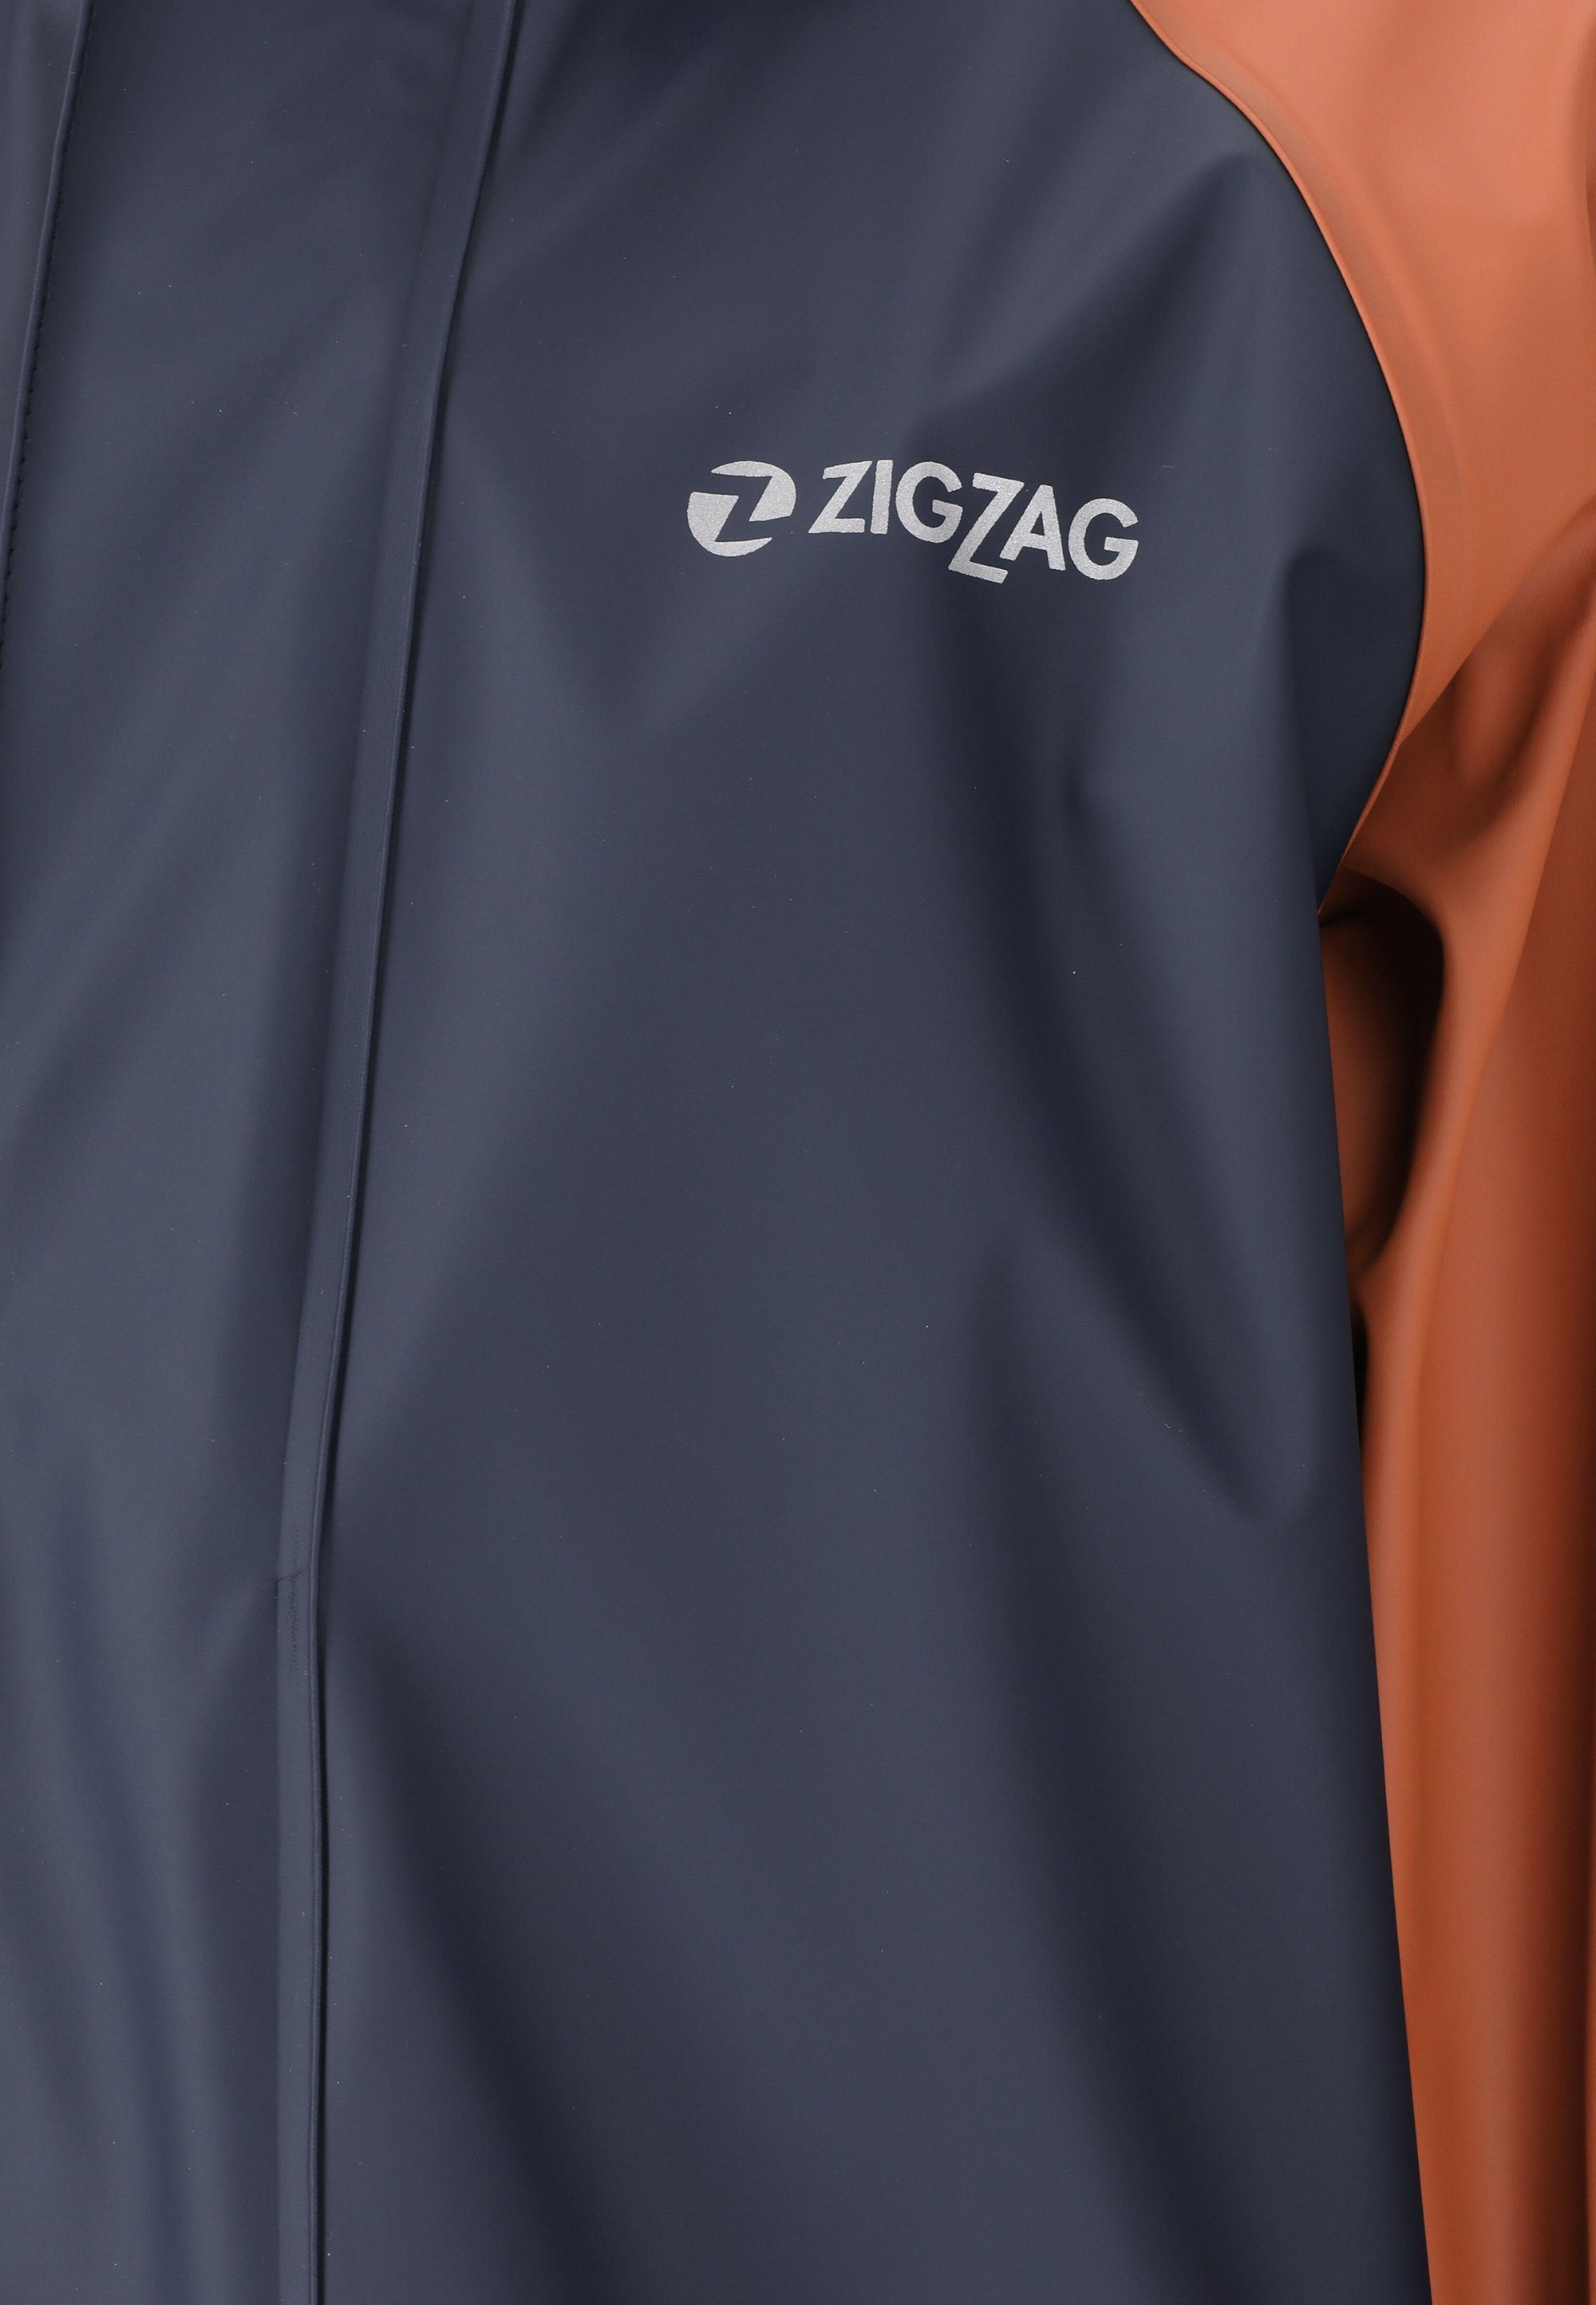 GILBO, Regenanzug dunkelblau-orange ZIGZAG mit reflektierenden Elementen